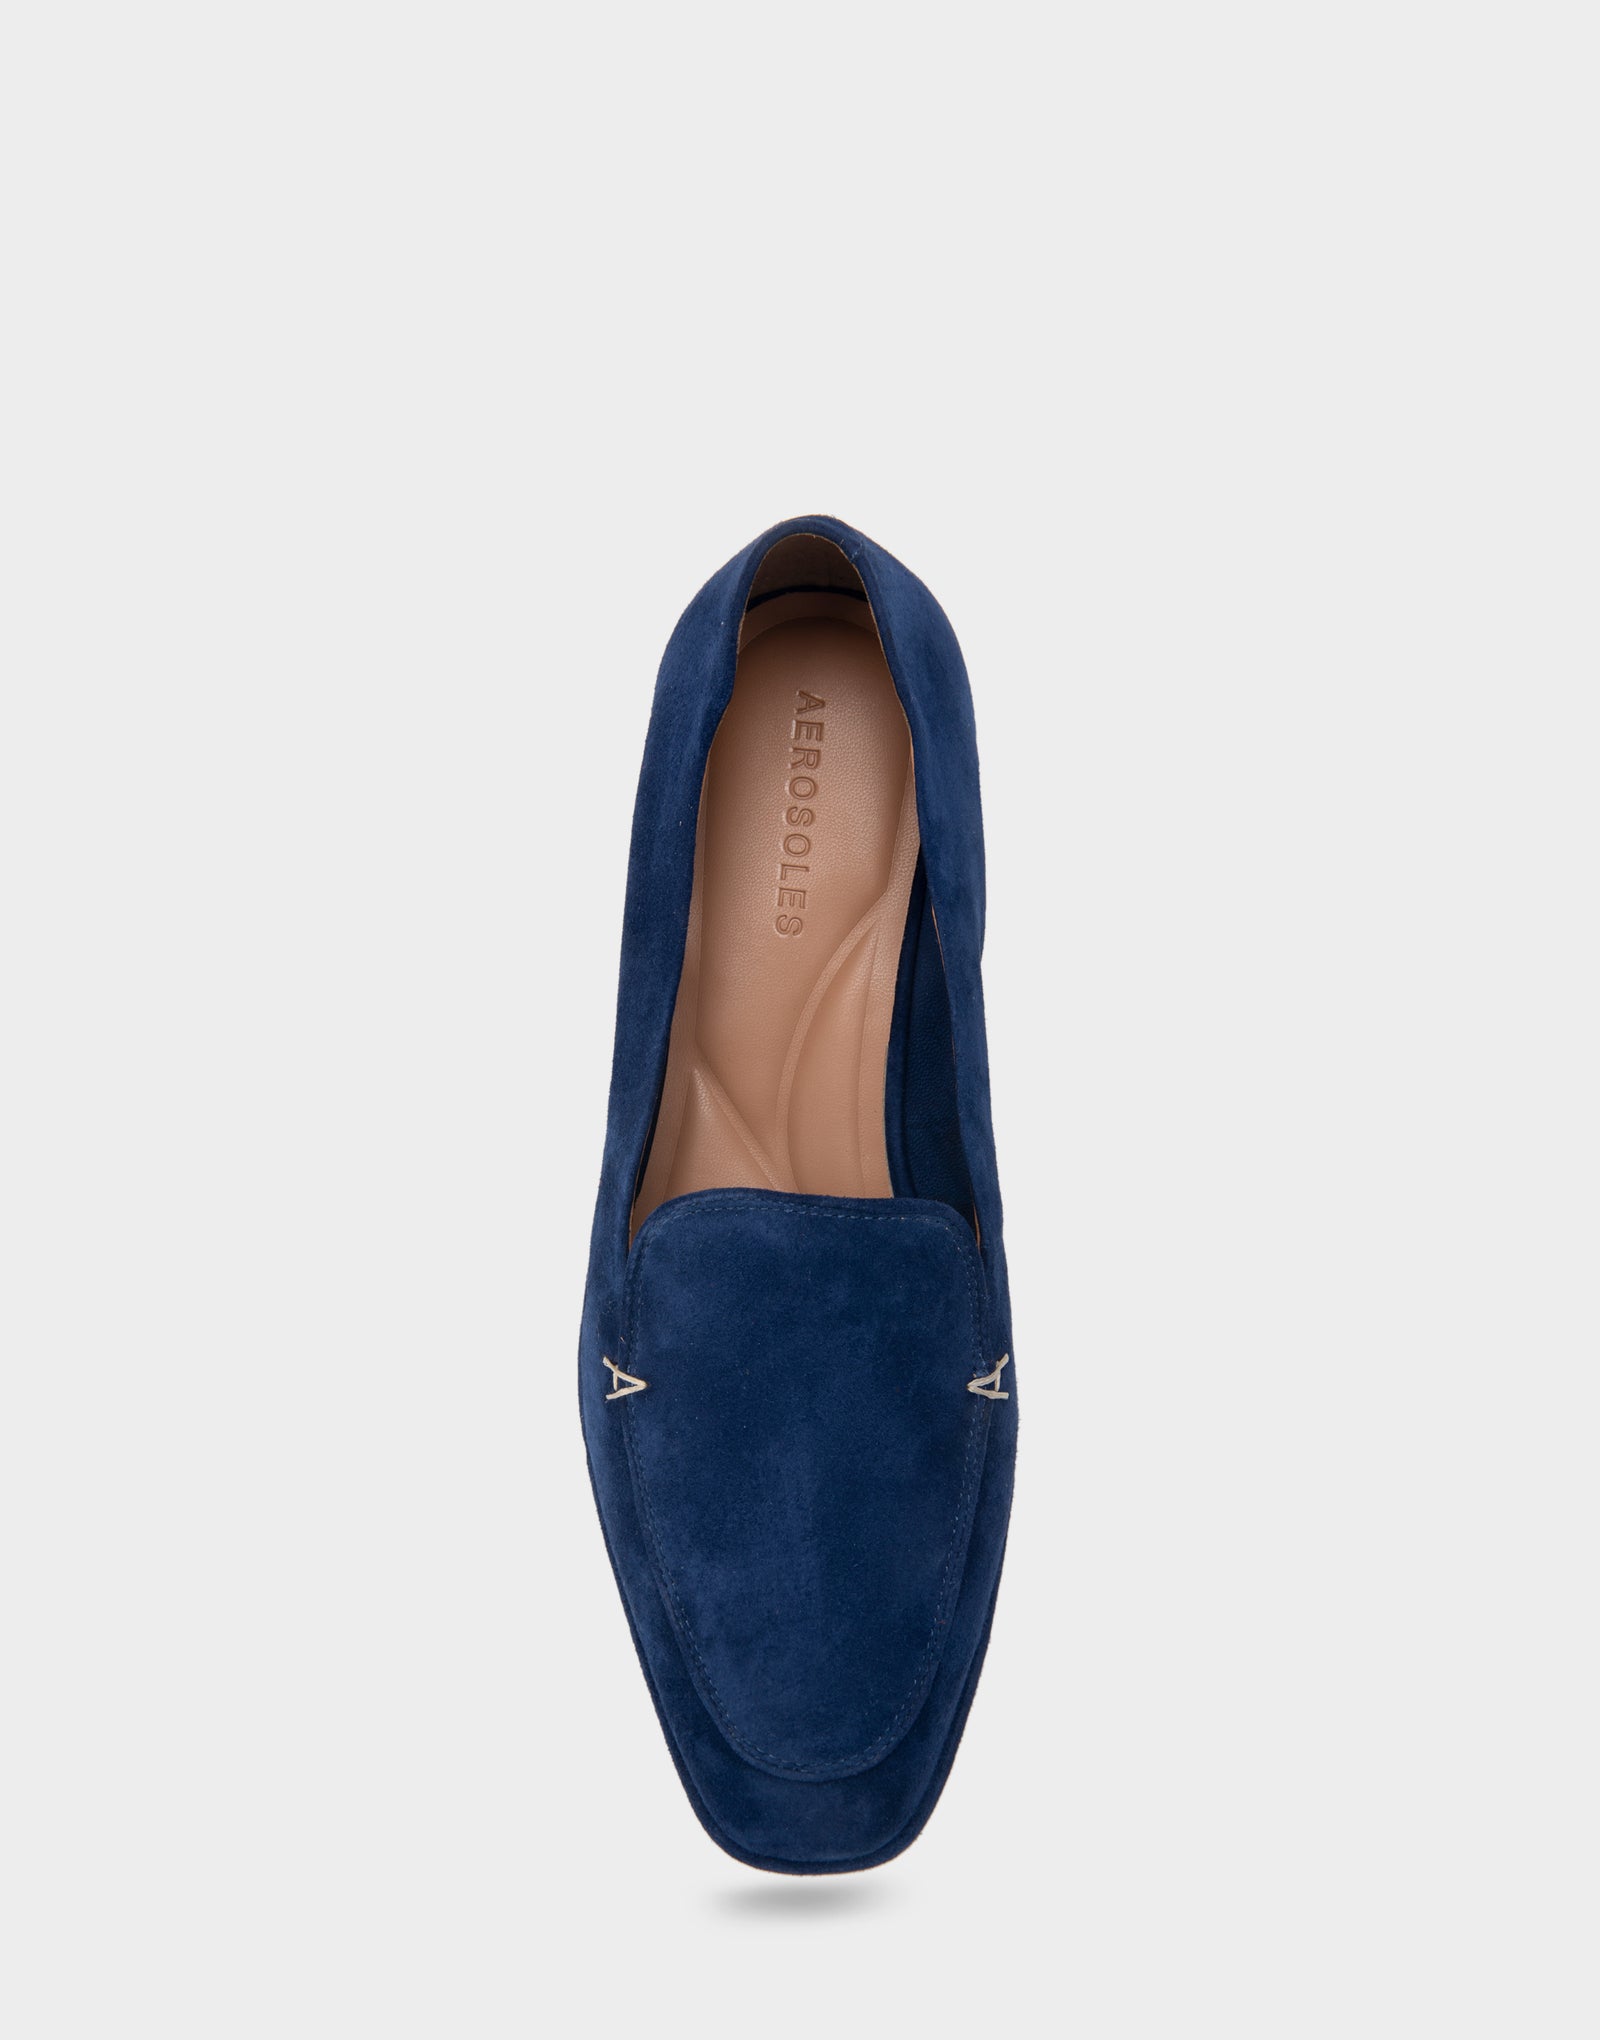 Women's Loafer in Blue